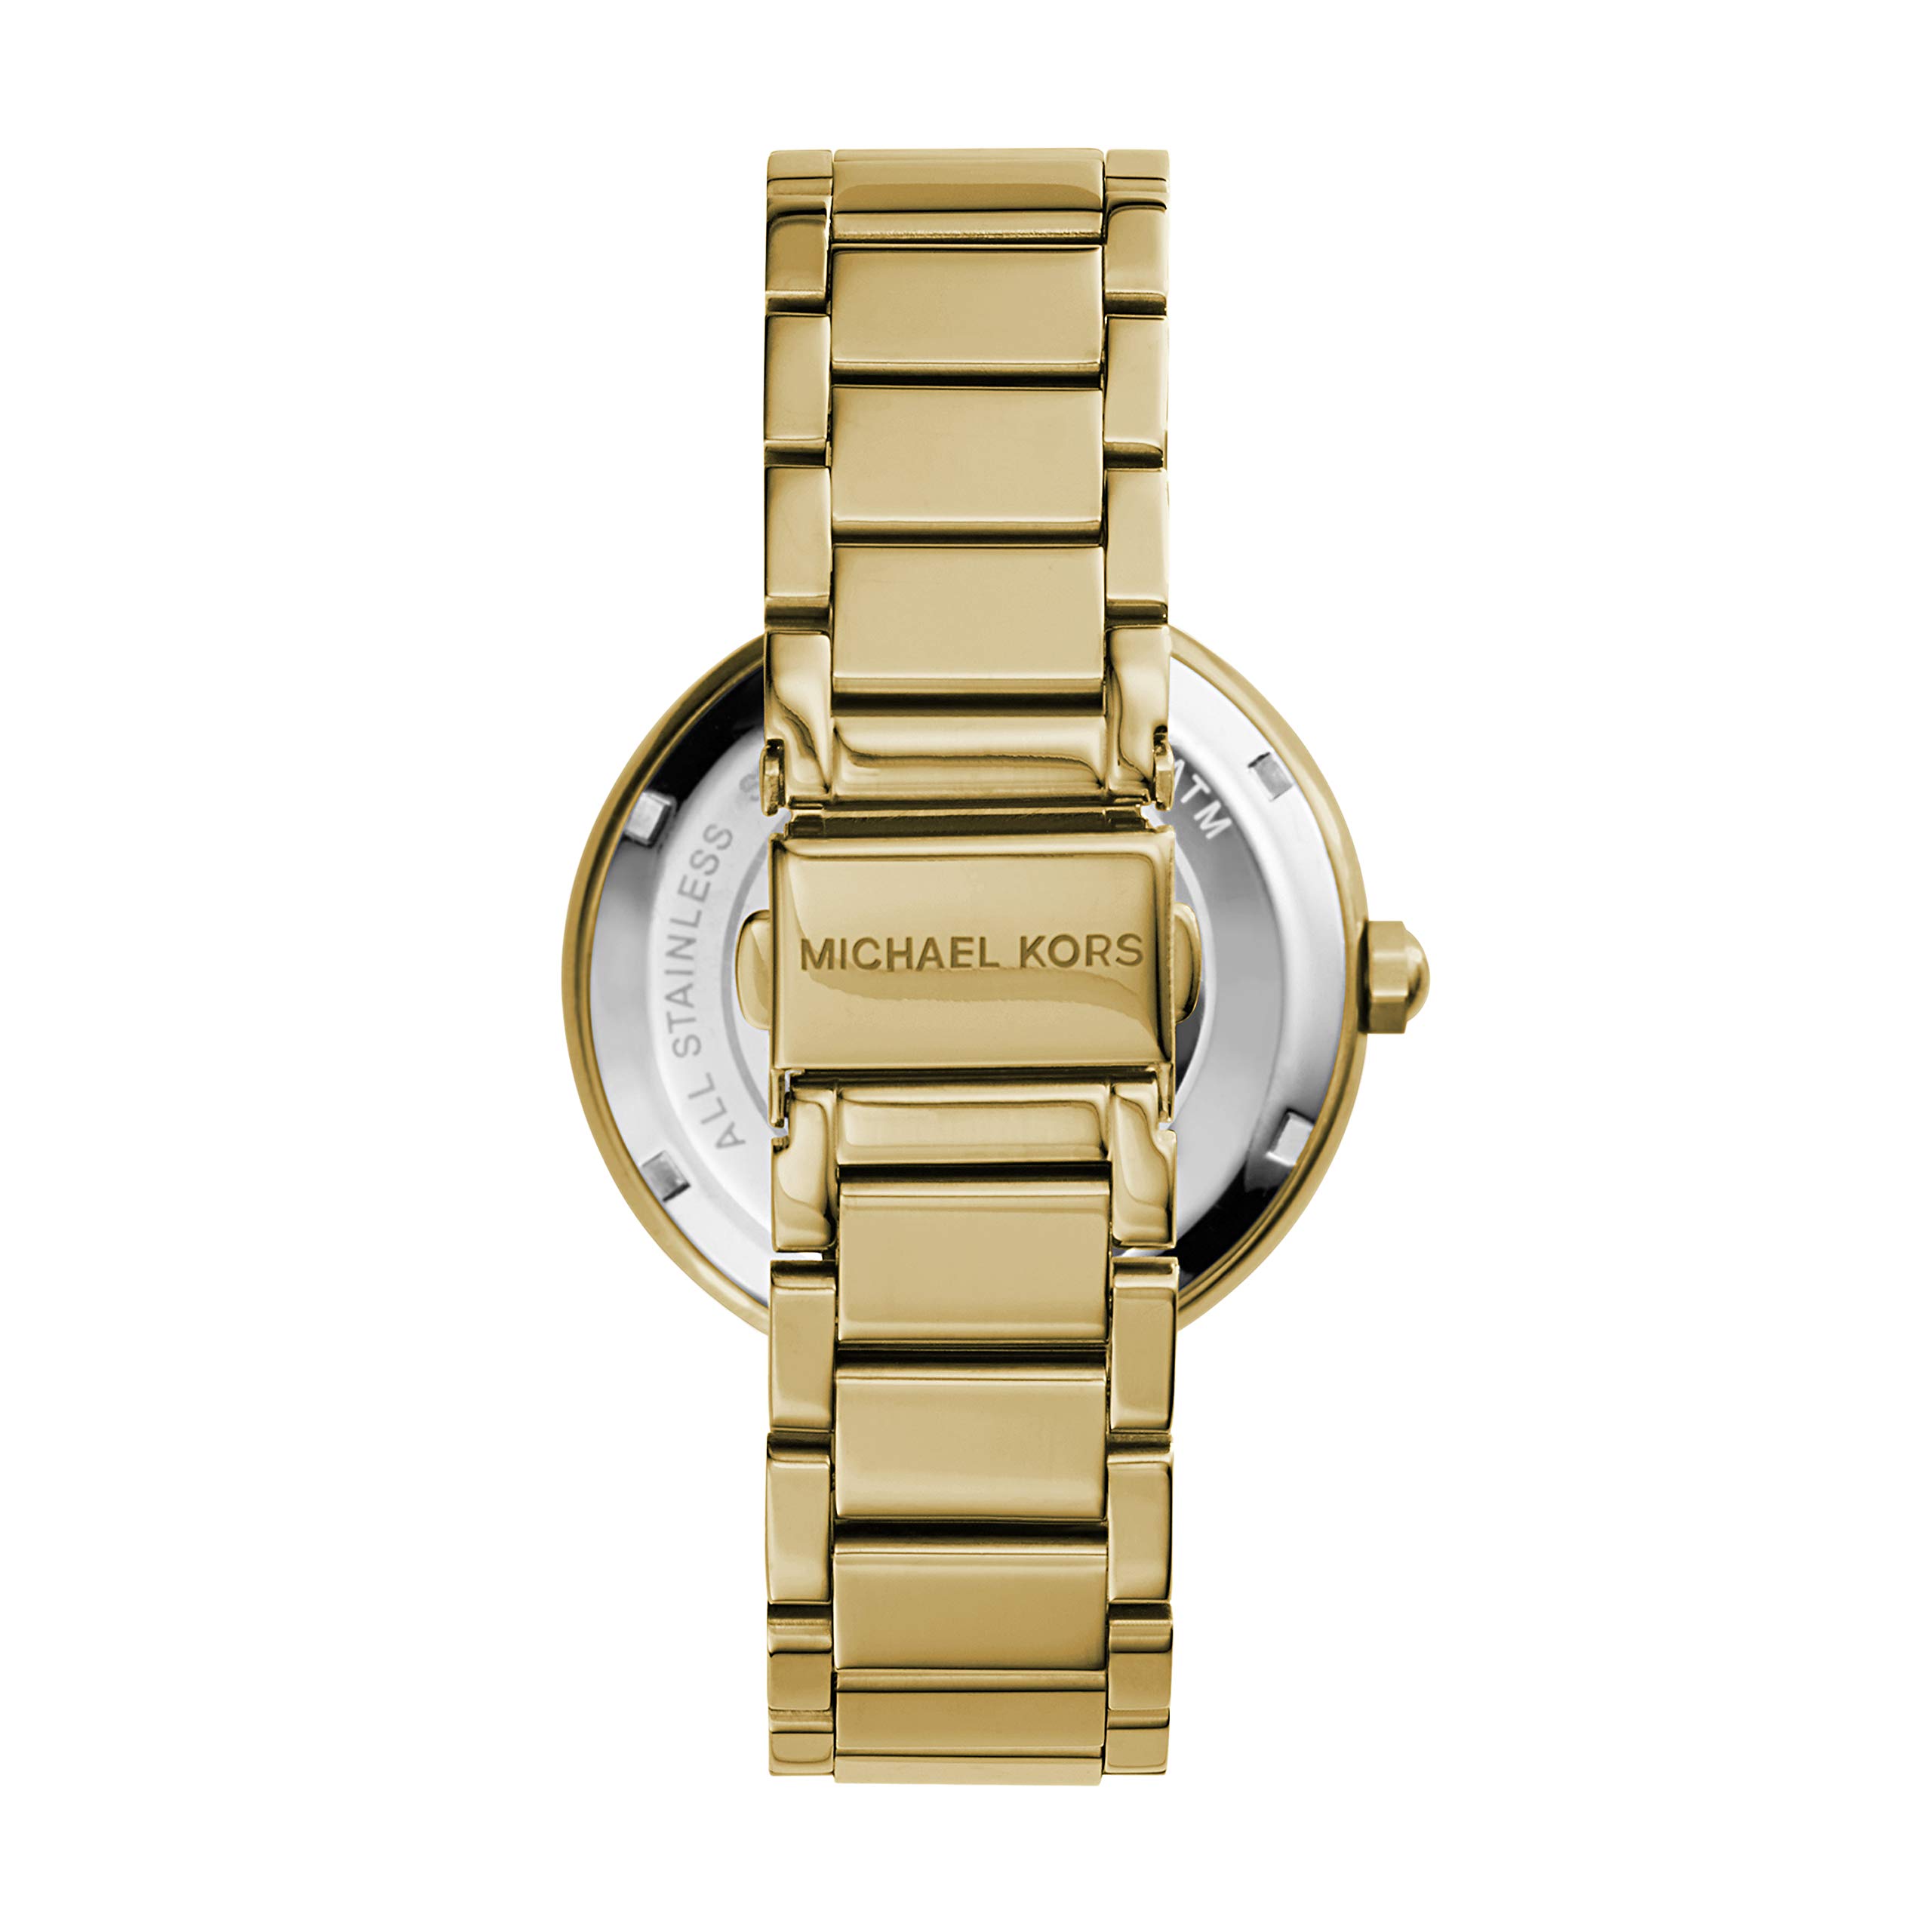 Michael Kors Women's Parker Gold-Tone Stainless Steel Bracelet Watch (Model: MK5784)